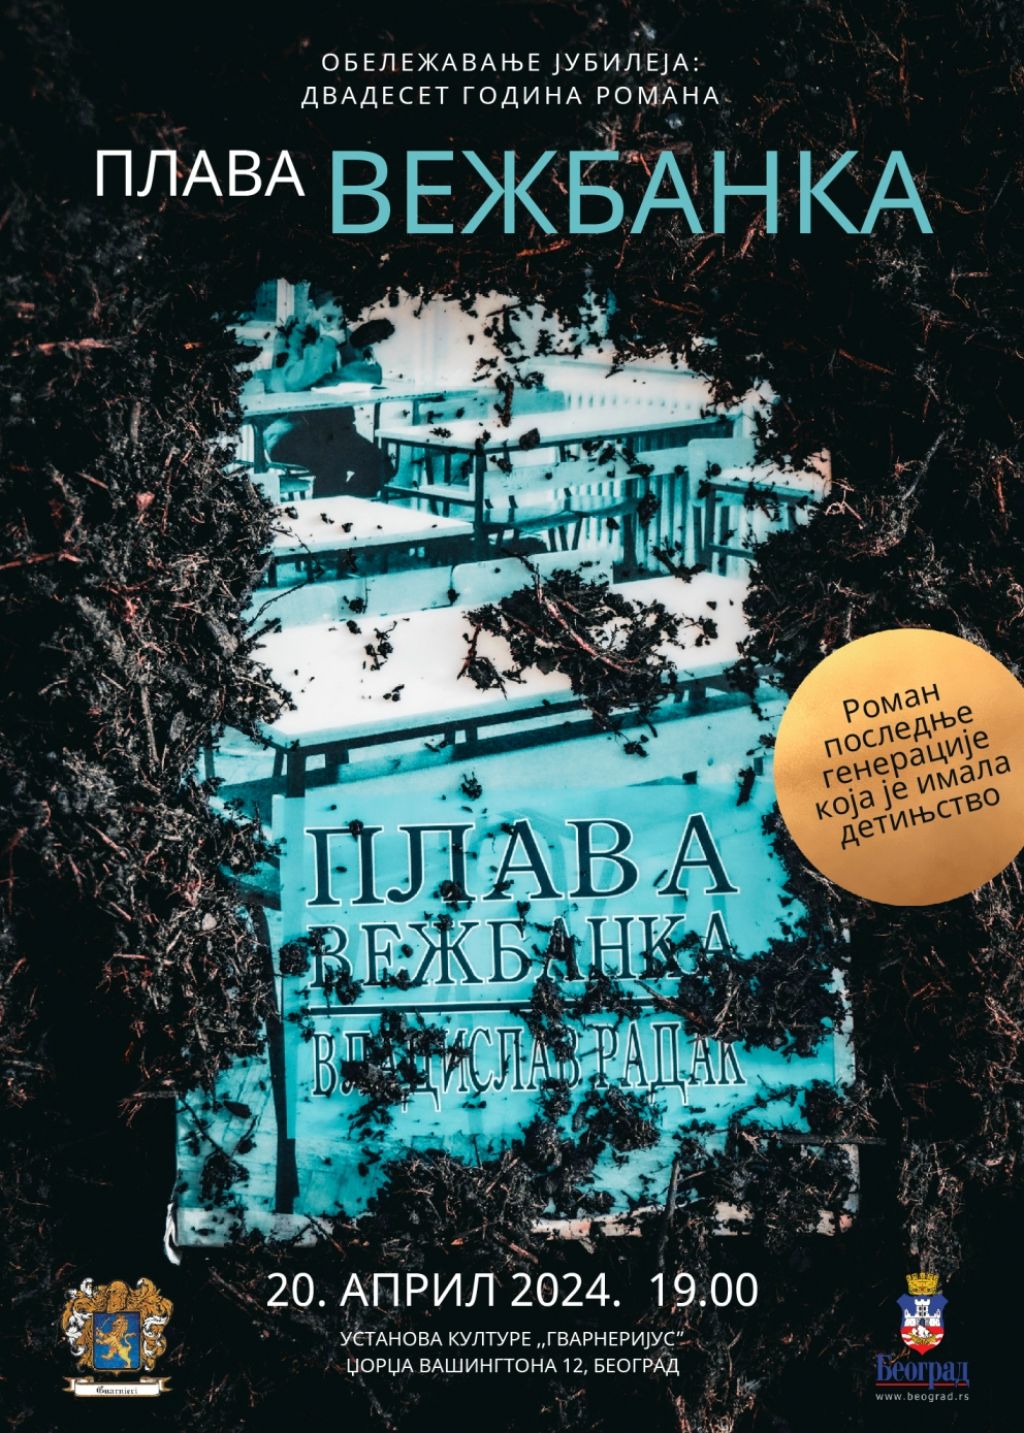 Dvadeset godina romana "Plava vežbanka" Vladislava Radaka